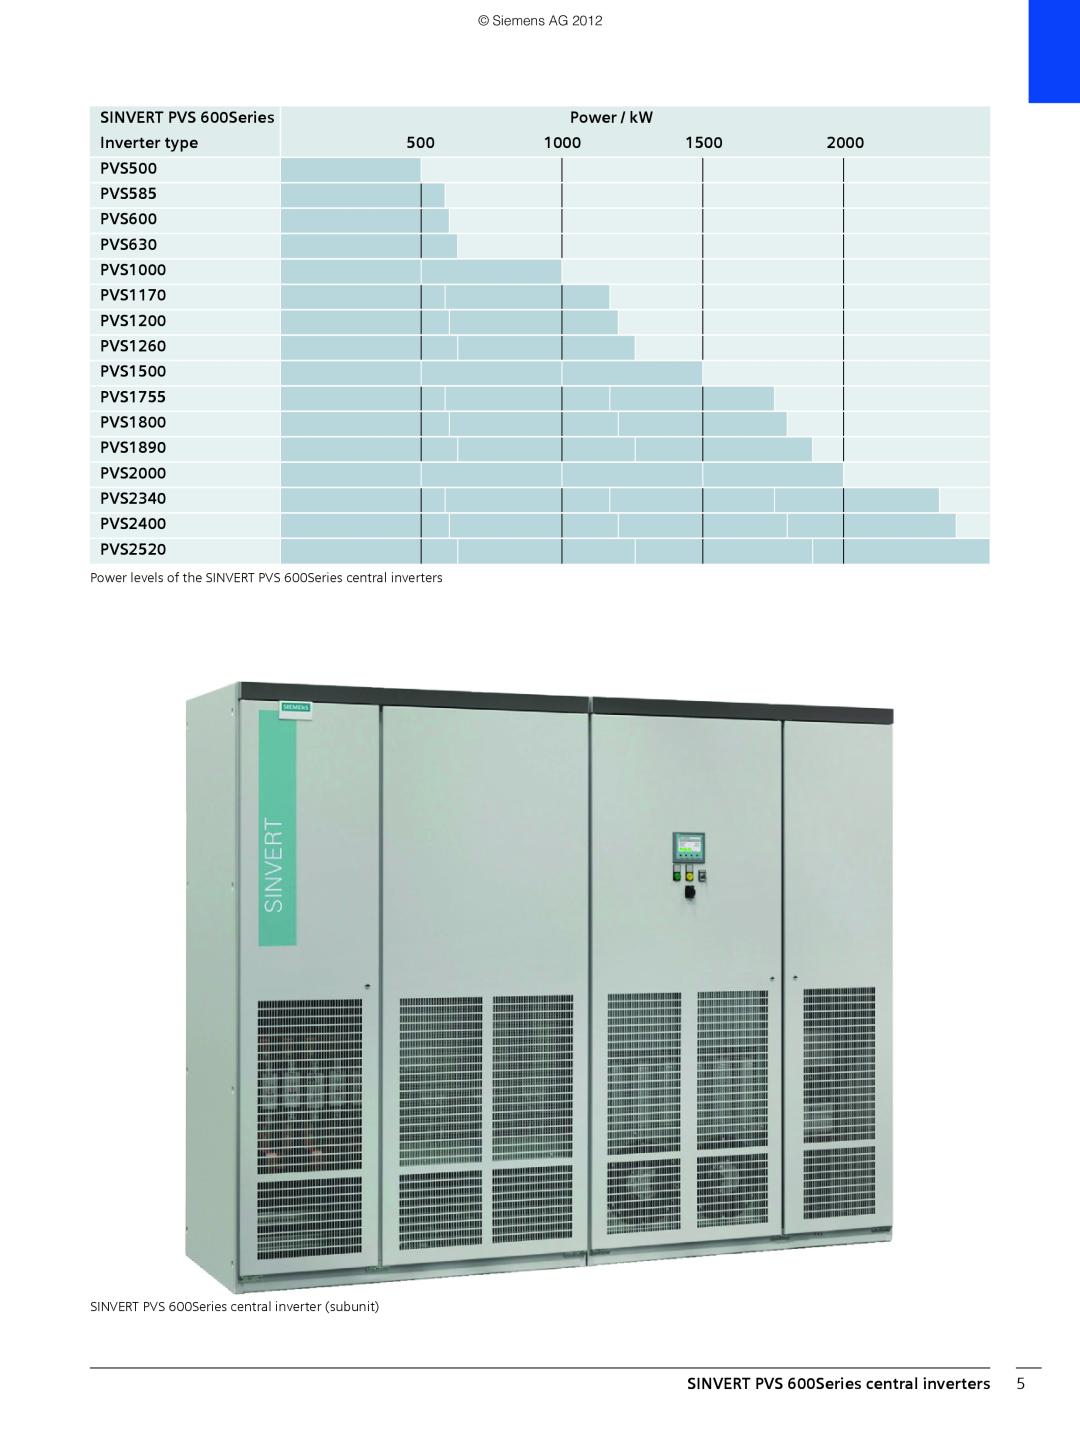 Siemens Power / kW, Inverter type, 1500, 2000, PVS500, PVS585, PVS600, PVS630, PVS1000, PVS1170, PVS1200, PVS1260 